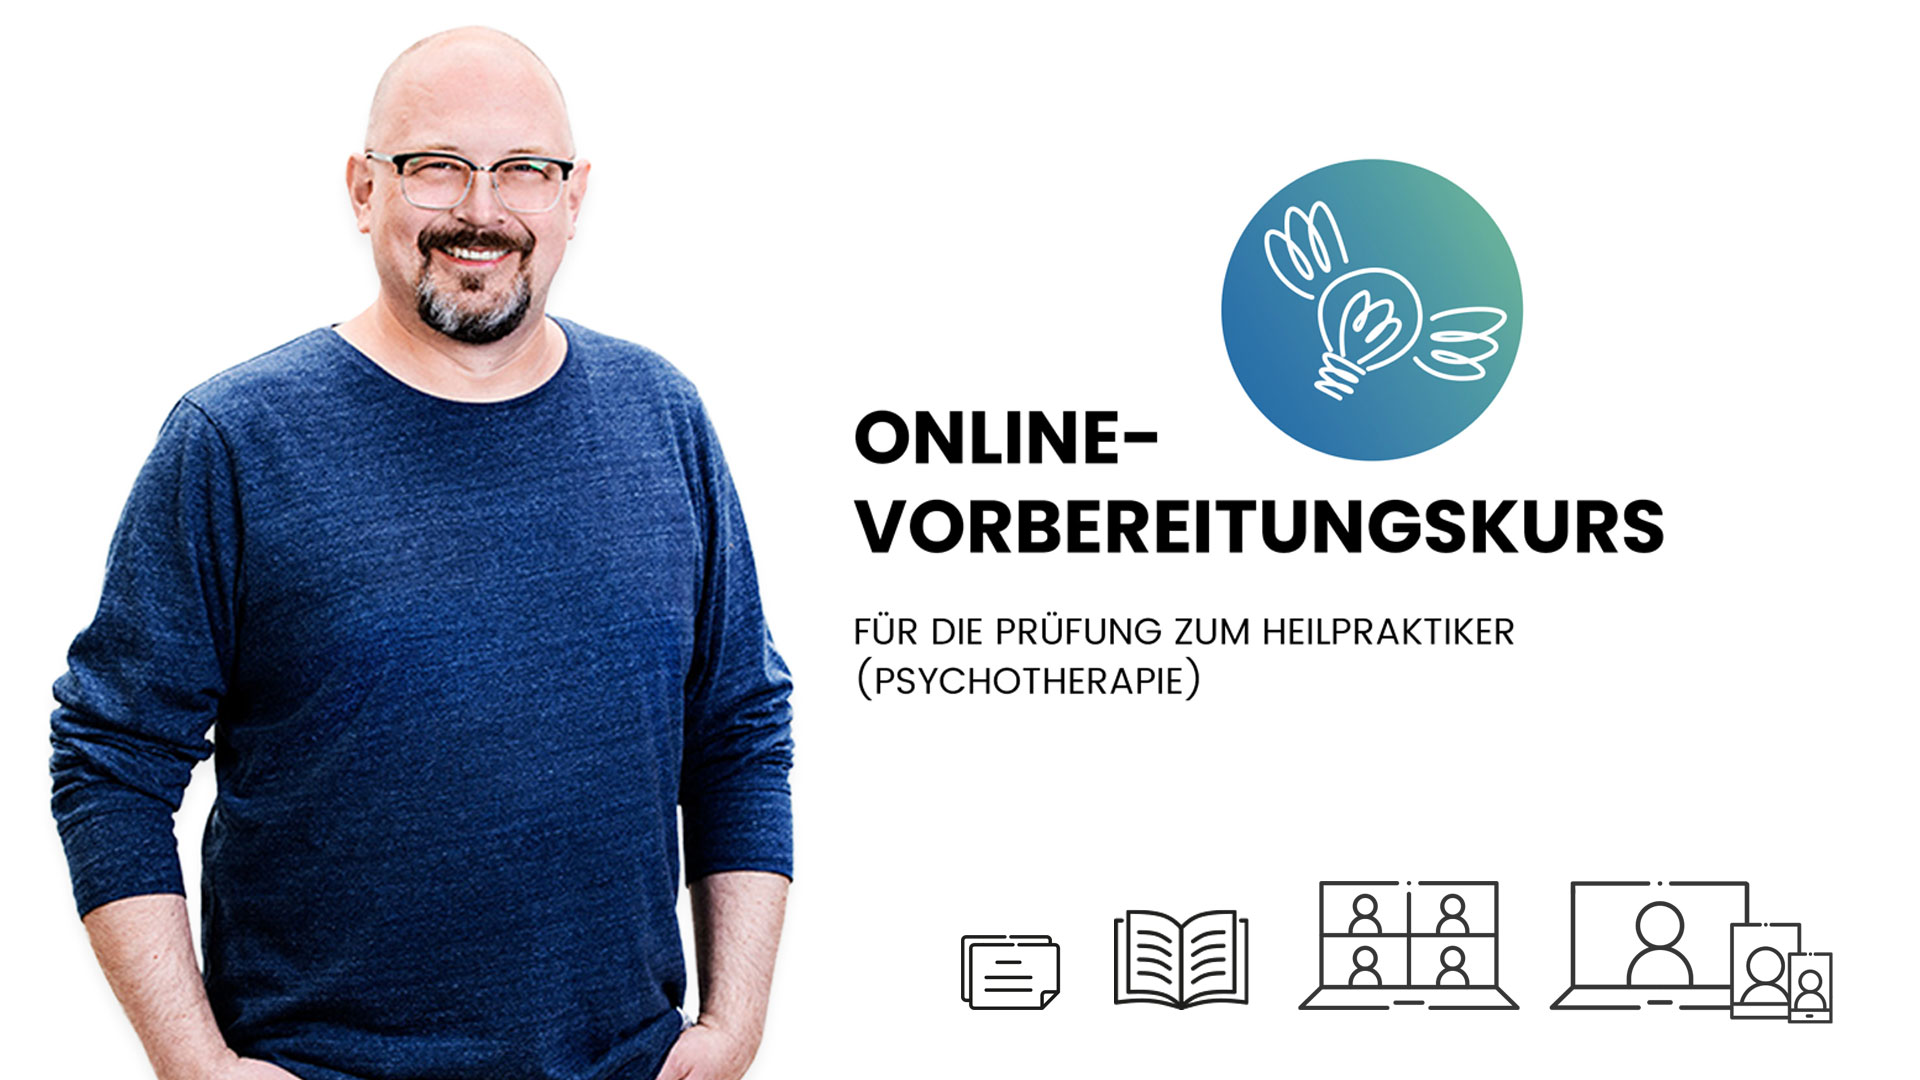 Online-Vorbereitungskurs auf die Prüfung zum Heilpraktiker (Psychotherapie) vor dem Gesundheitsamt